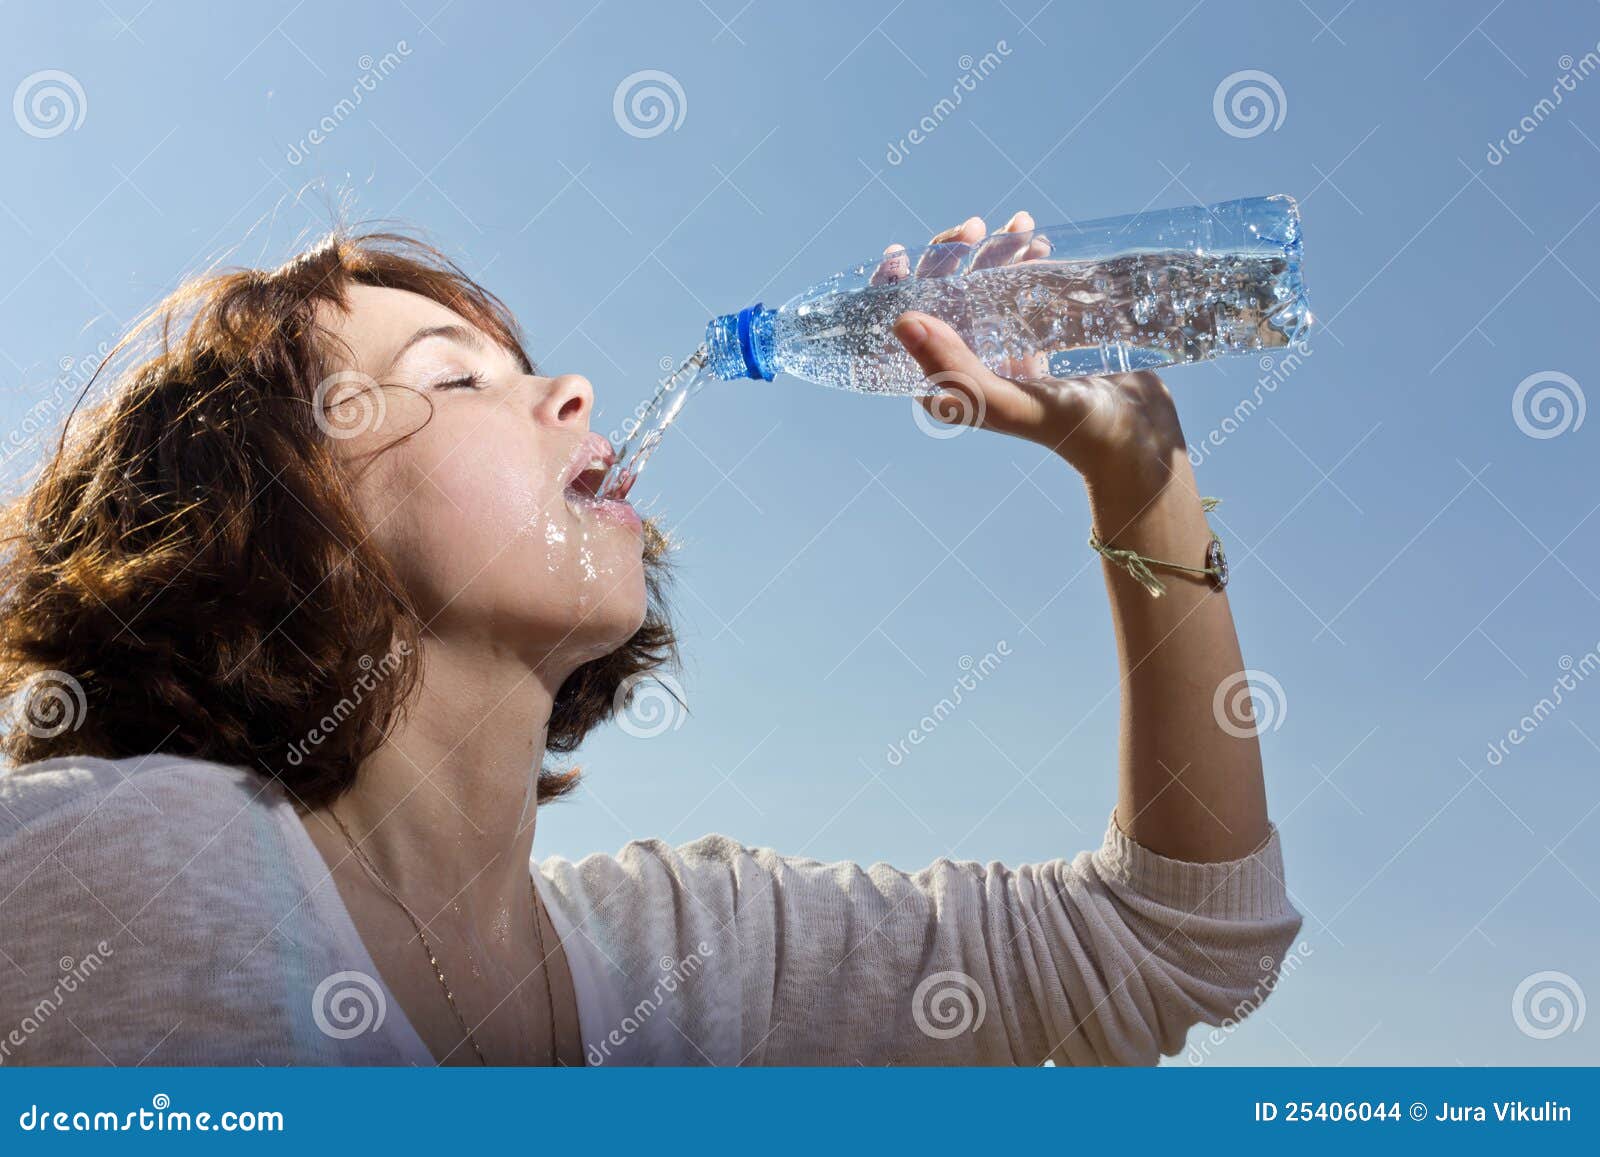 Удовлетворение жажды. Девушка пьет воду из бутылки. Женщина наливает воду. Жажда воды. Девушка пьет из бутылки.